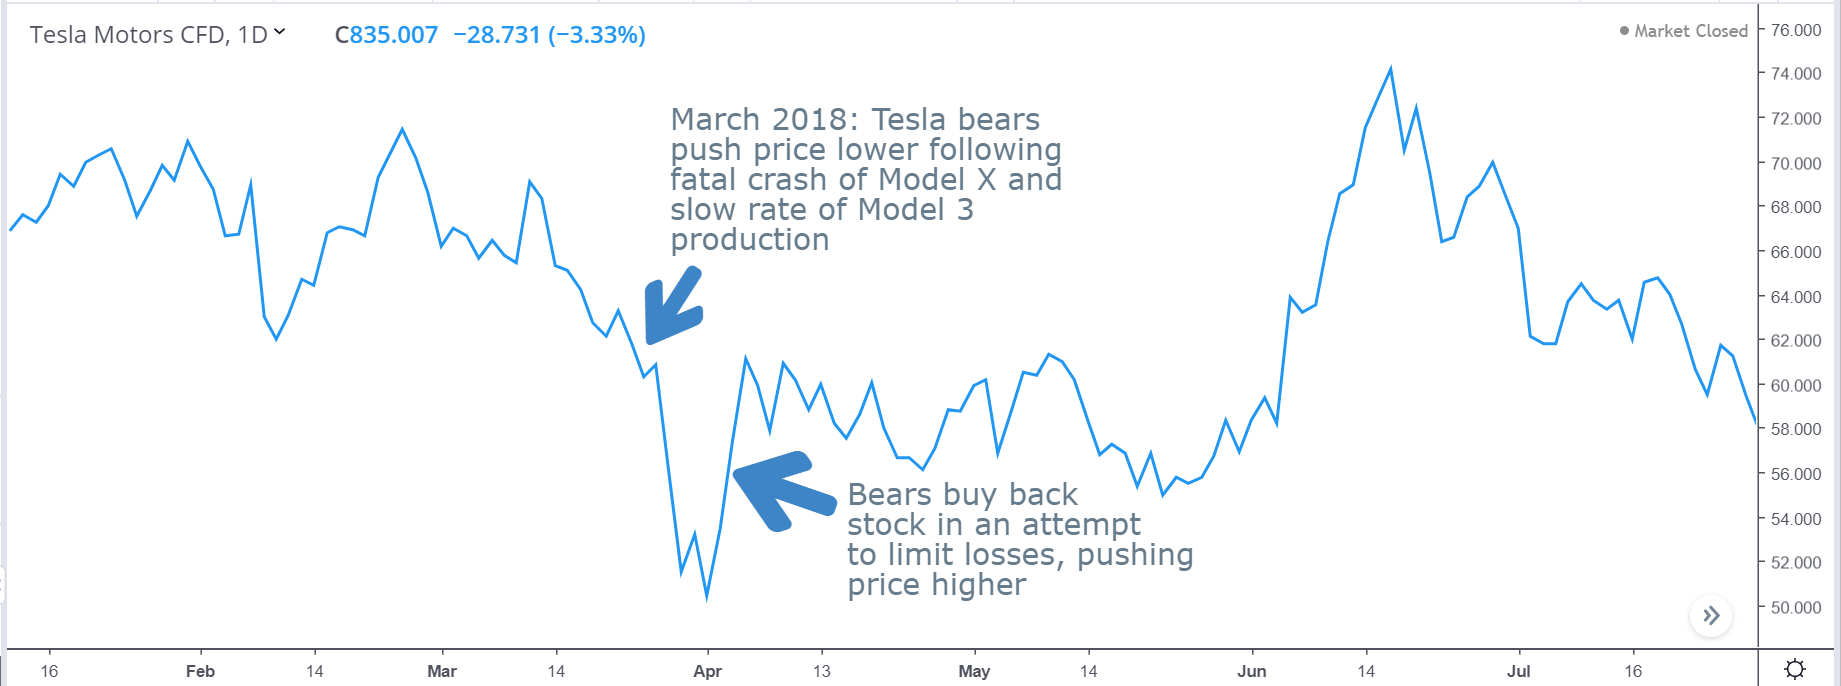 Short squeeze in Tesla stock in 2018